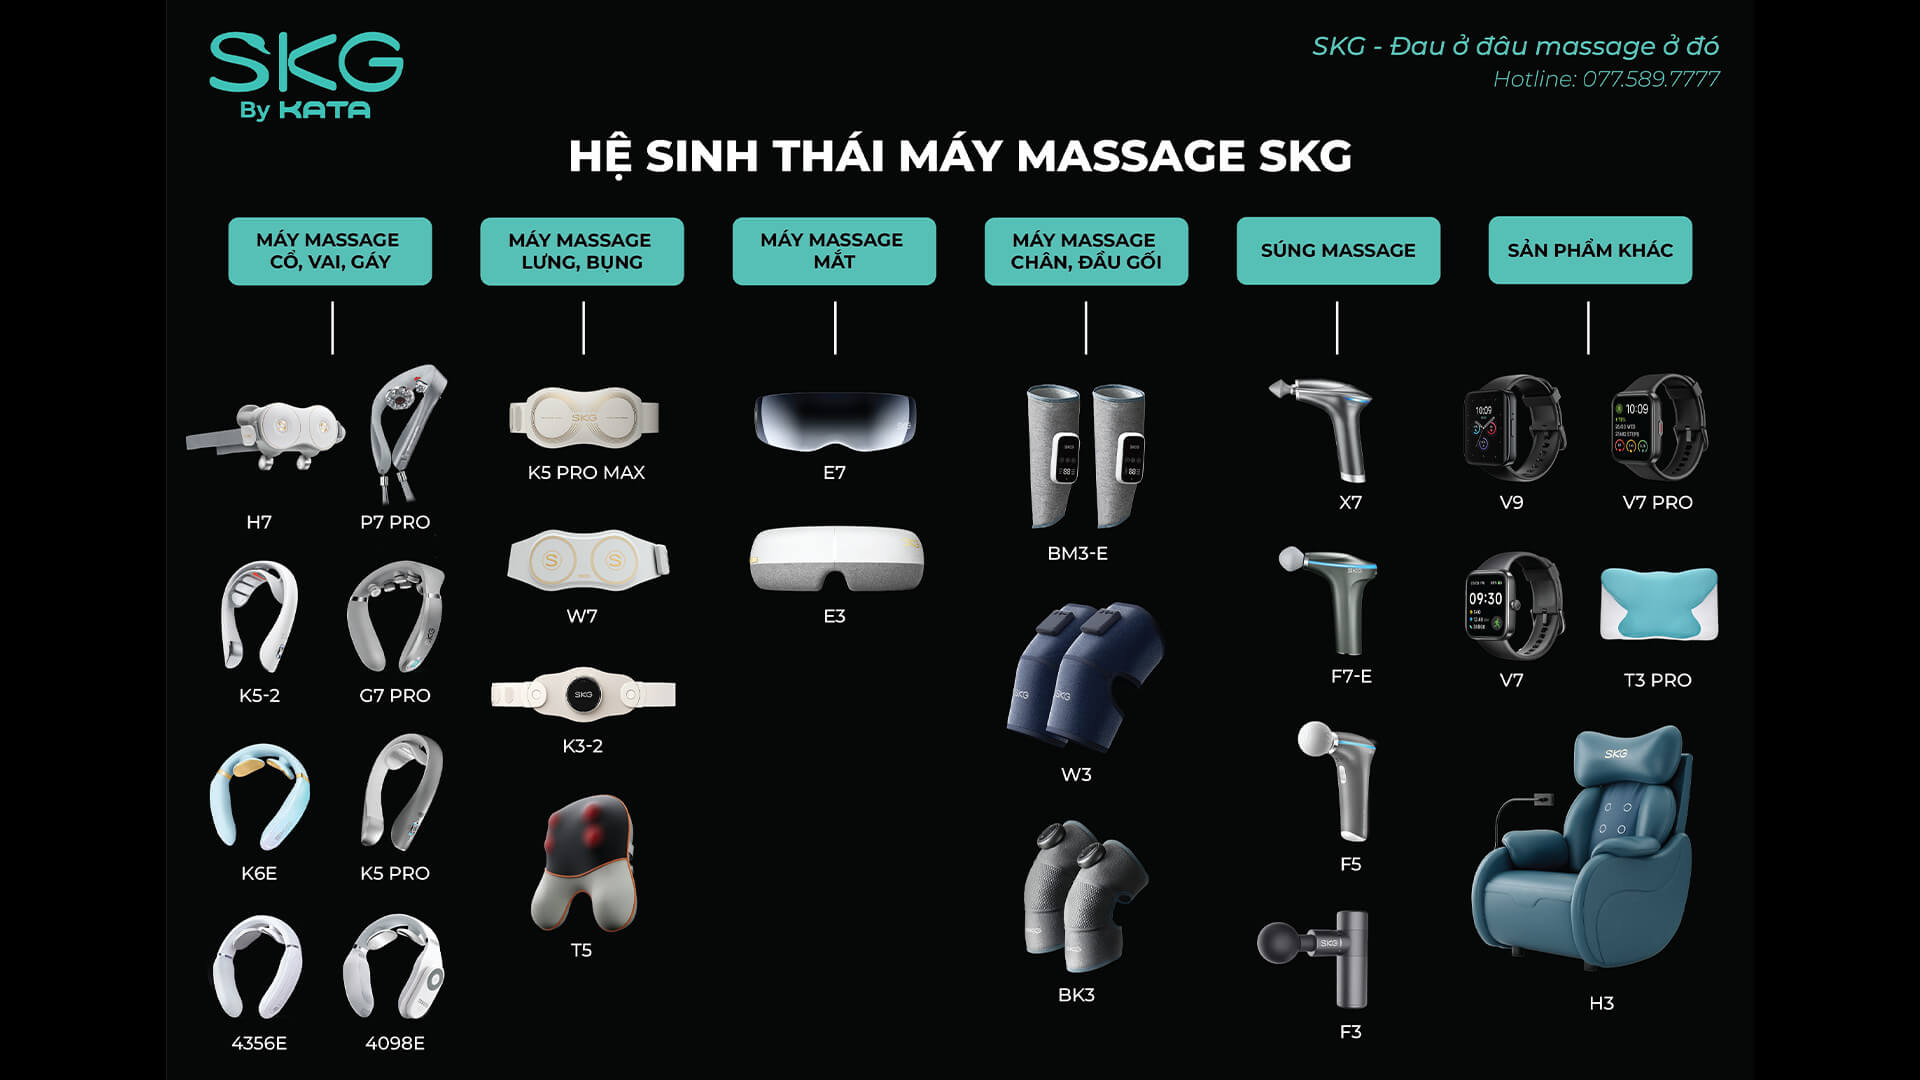 Hệ sinh thái máy massage SKG